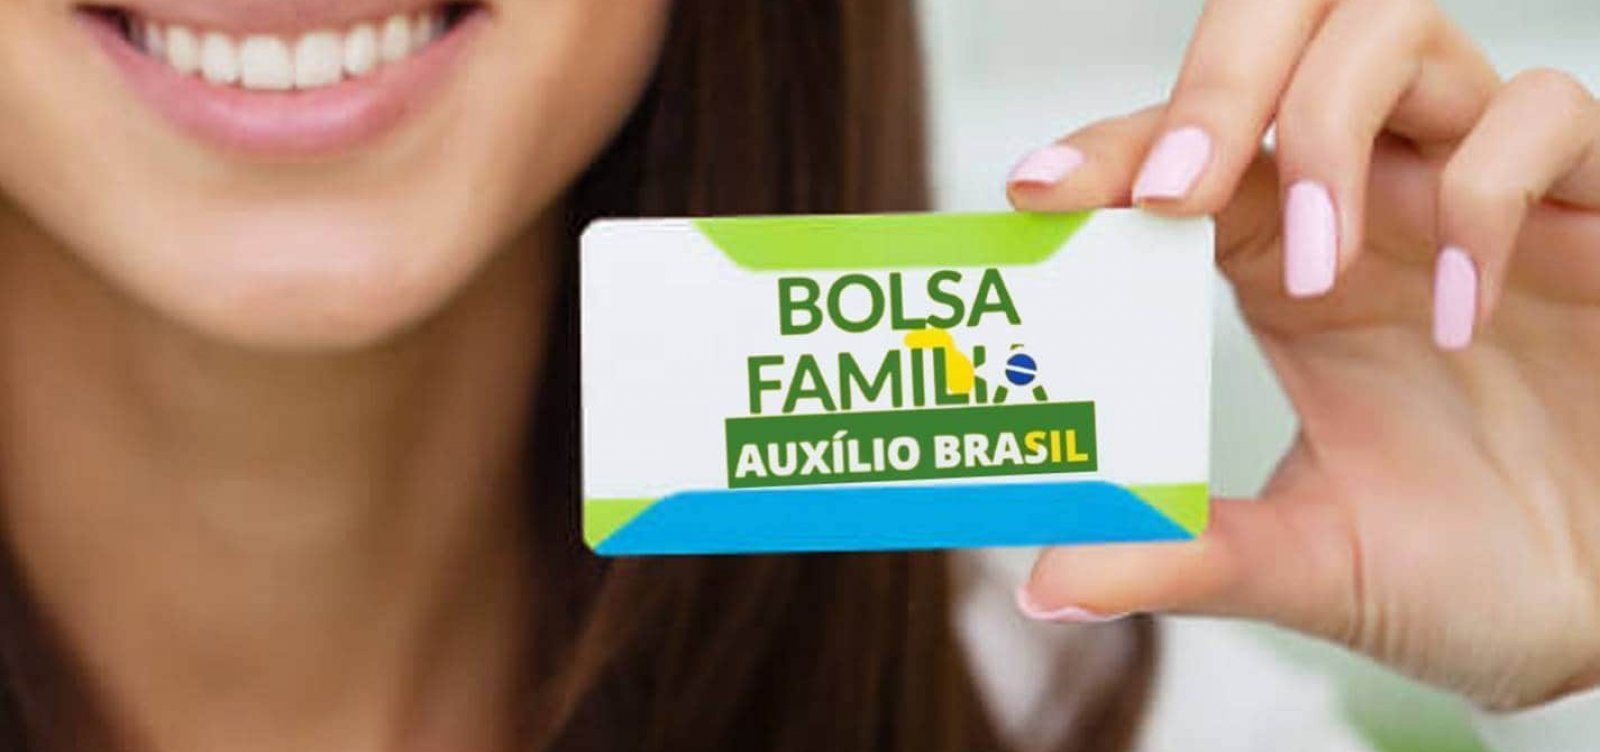 Datafolha: Auxílio Brasil de R$ 600 é considerado insuficiente por mais da metade dos beneficiários